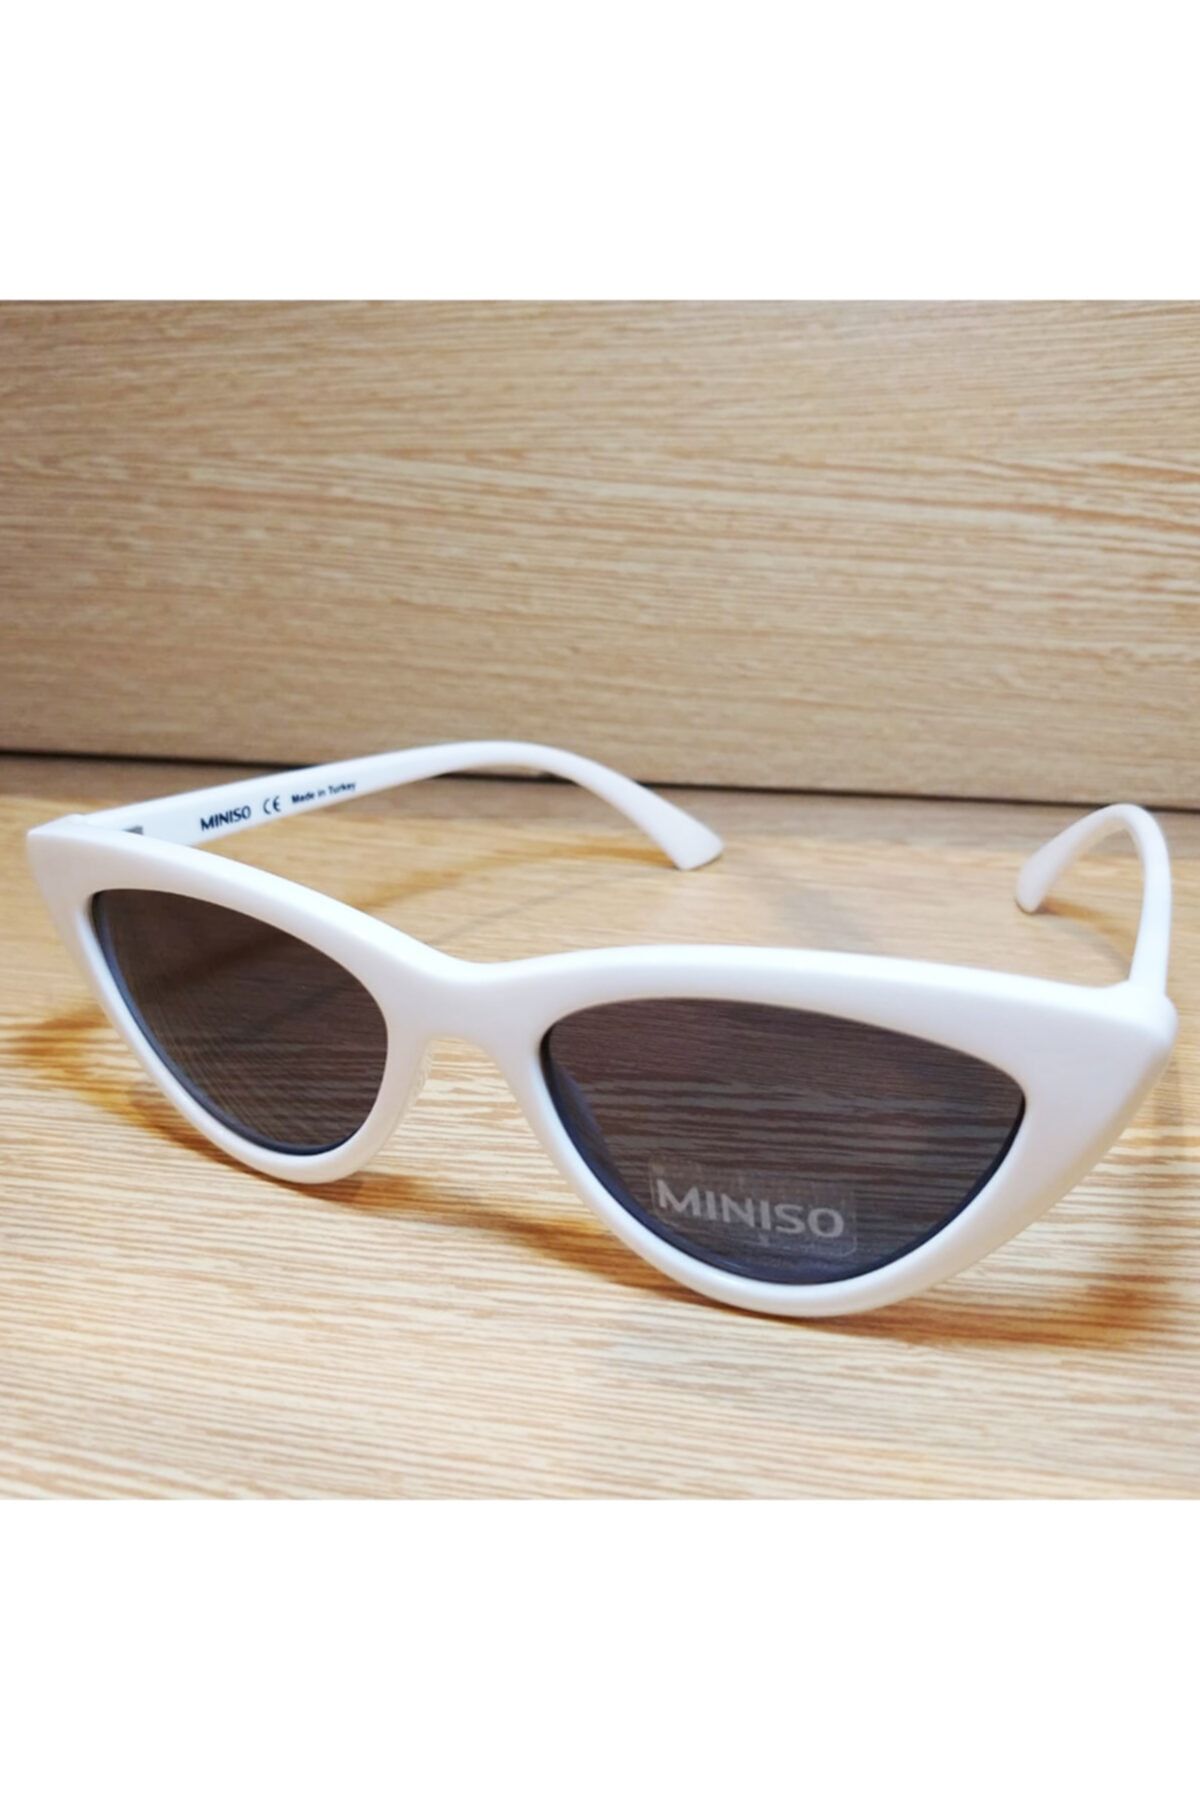 Miniso Kedi Gözü Beyaz Çerçeve - Füme Cam